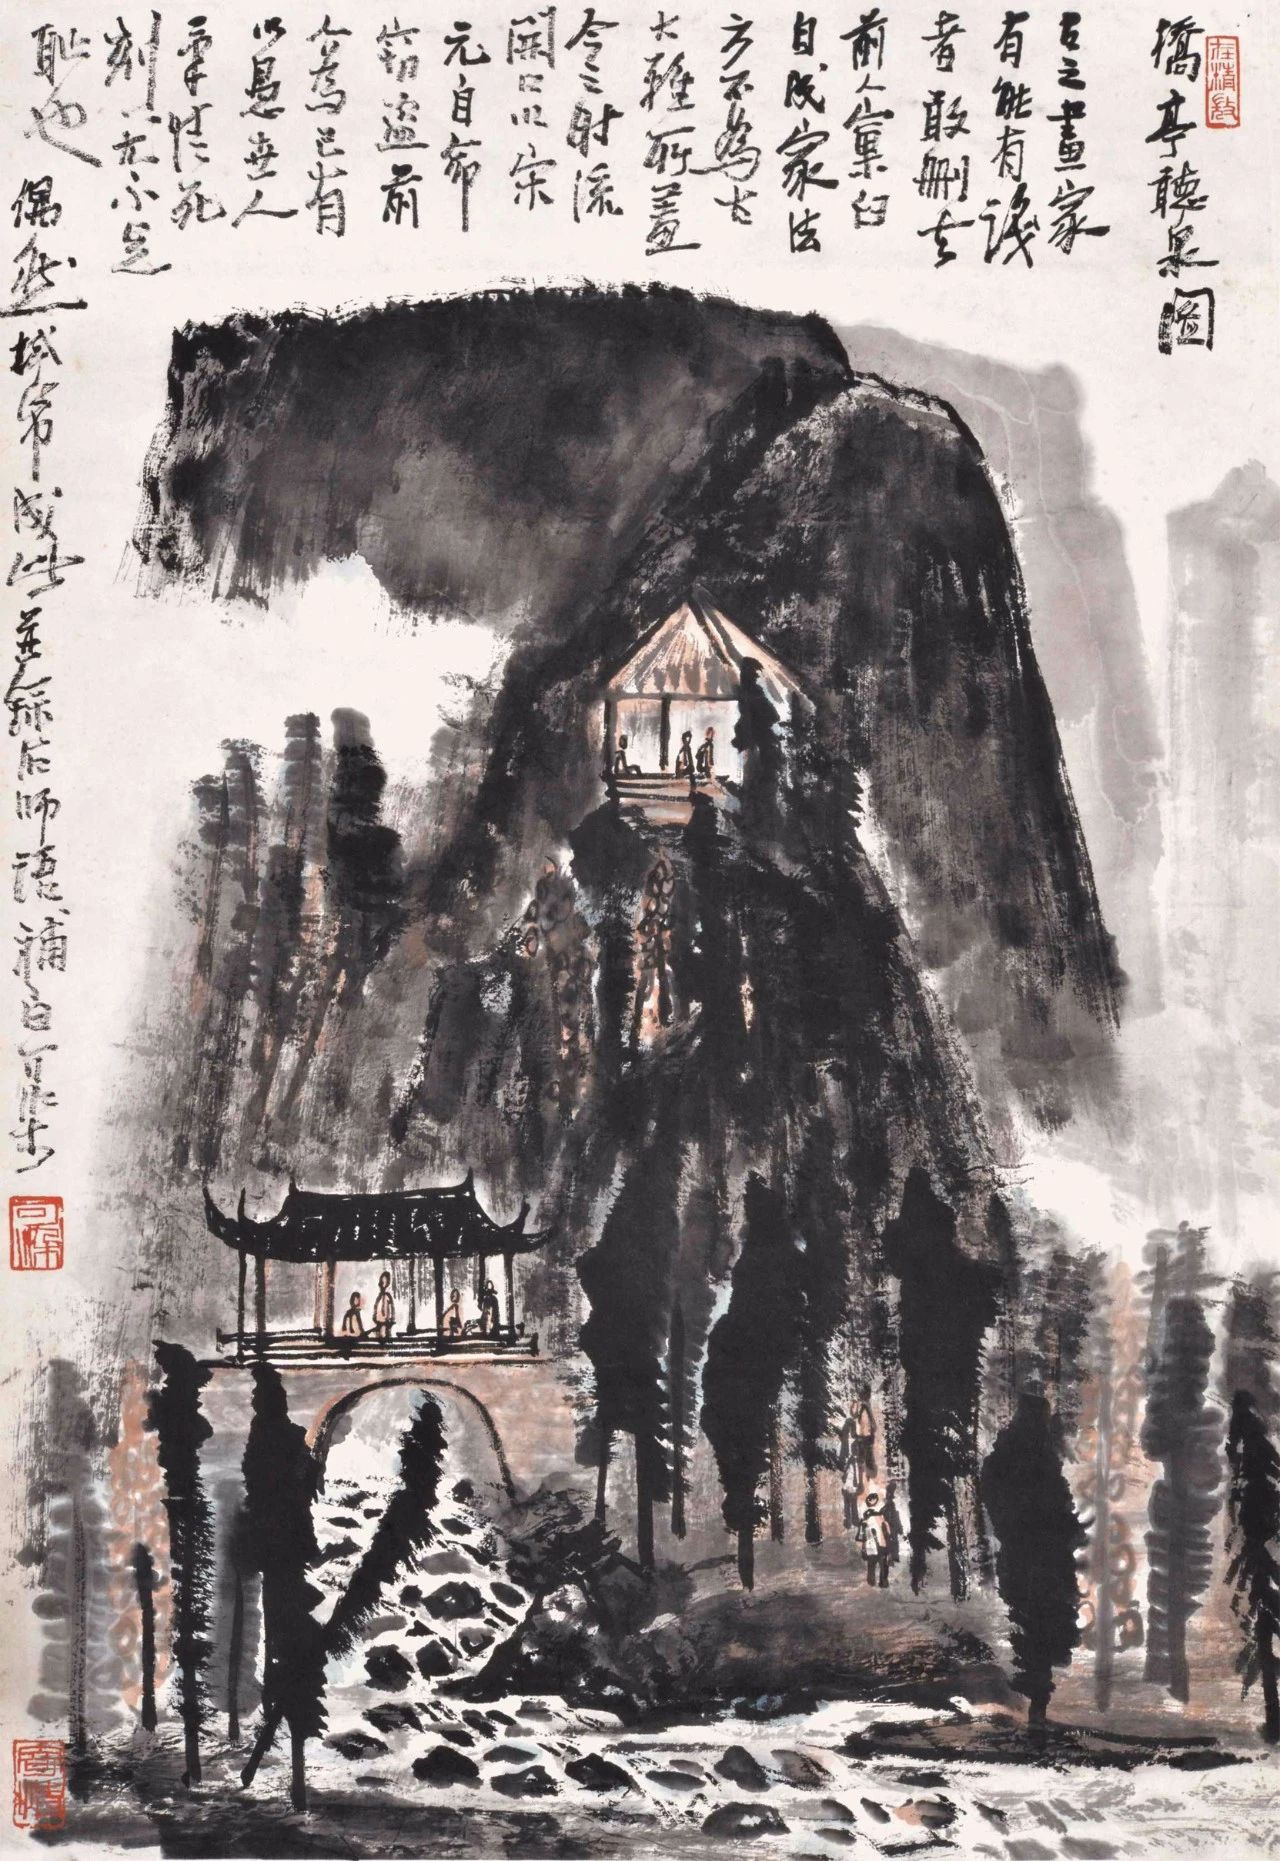 中国传统绘画不是一成不变的而是随着时代的发展不断发展